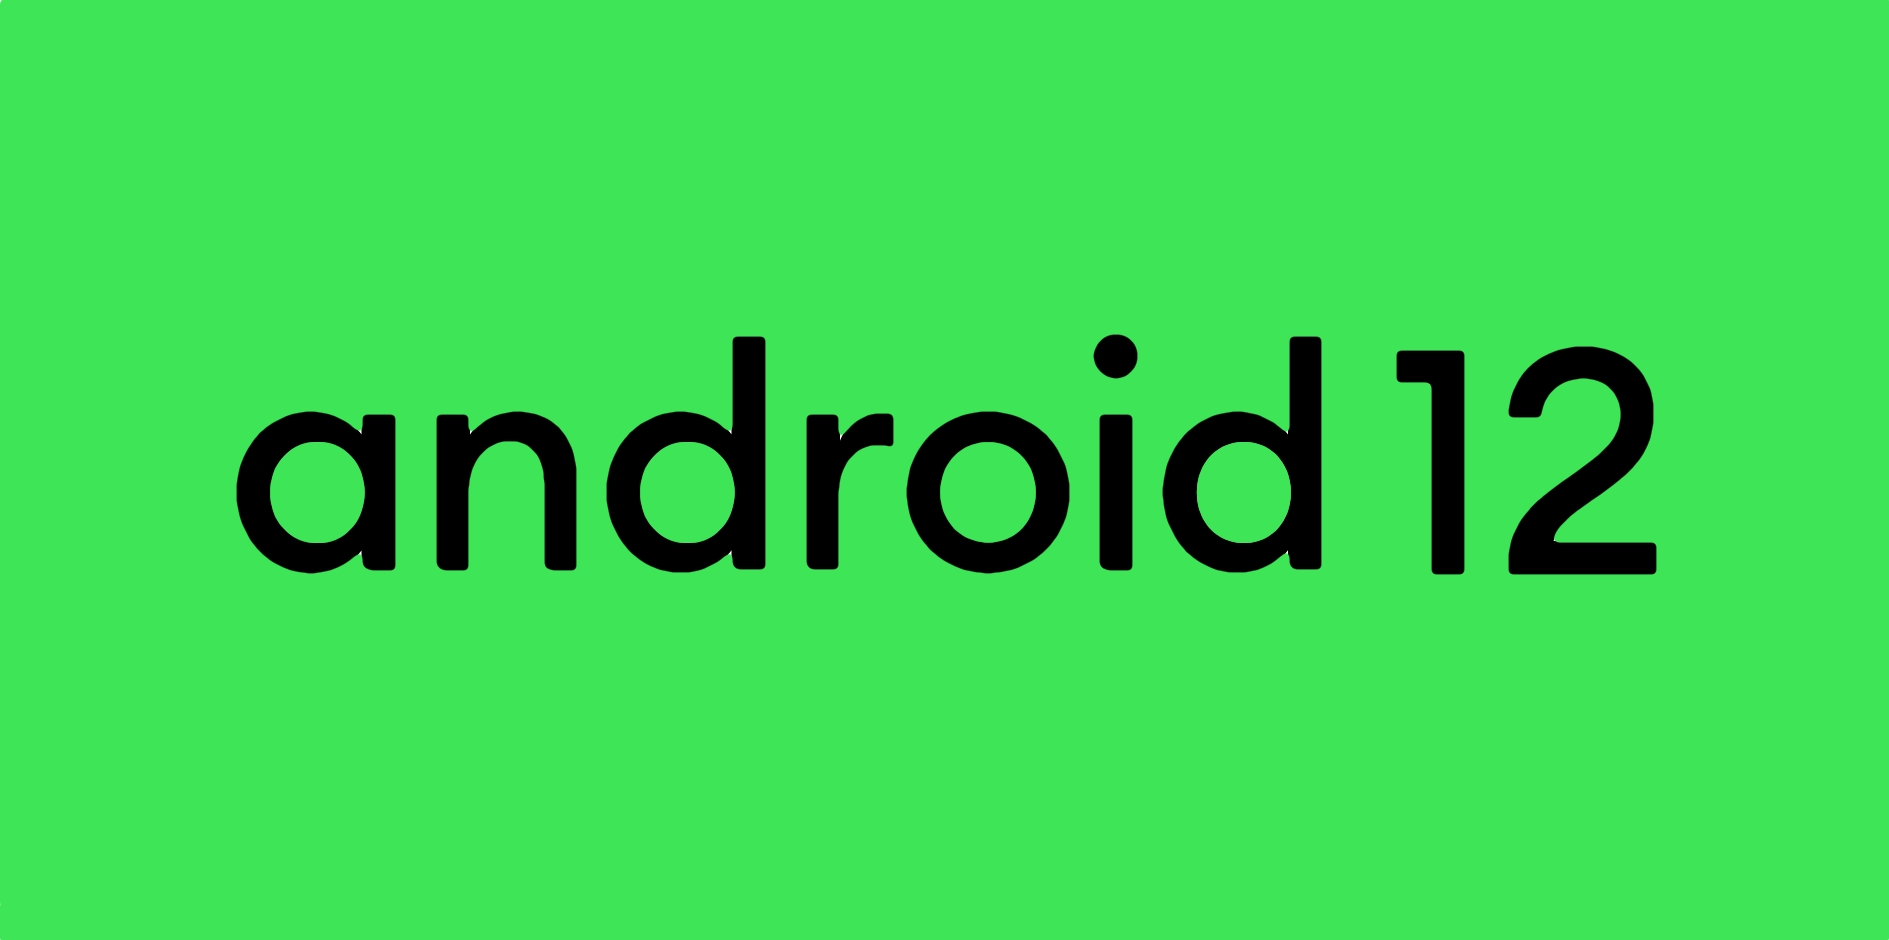 Google oficjalnie udostępniło stabilną wersję Androida 12, ale aktualizacja dla smartfonów Pixel nadejdzie później